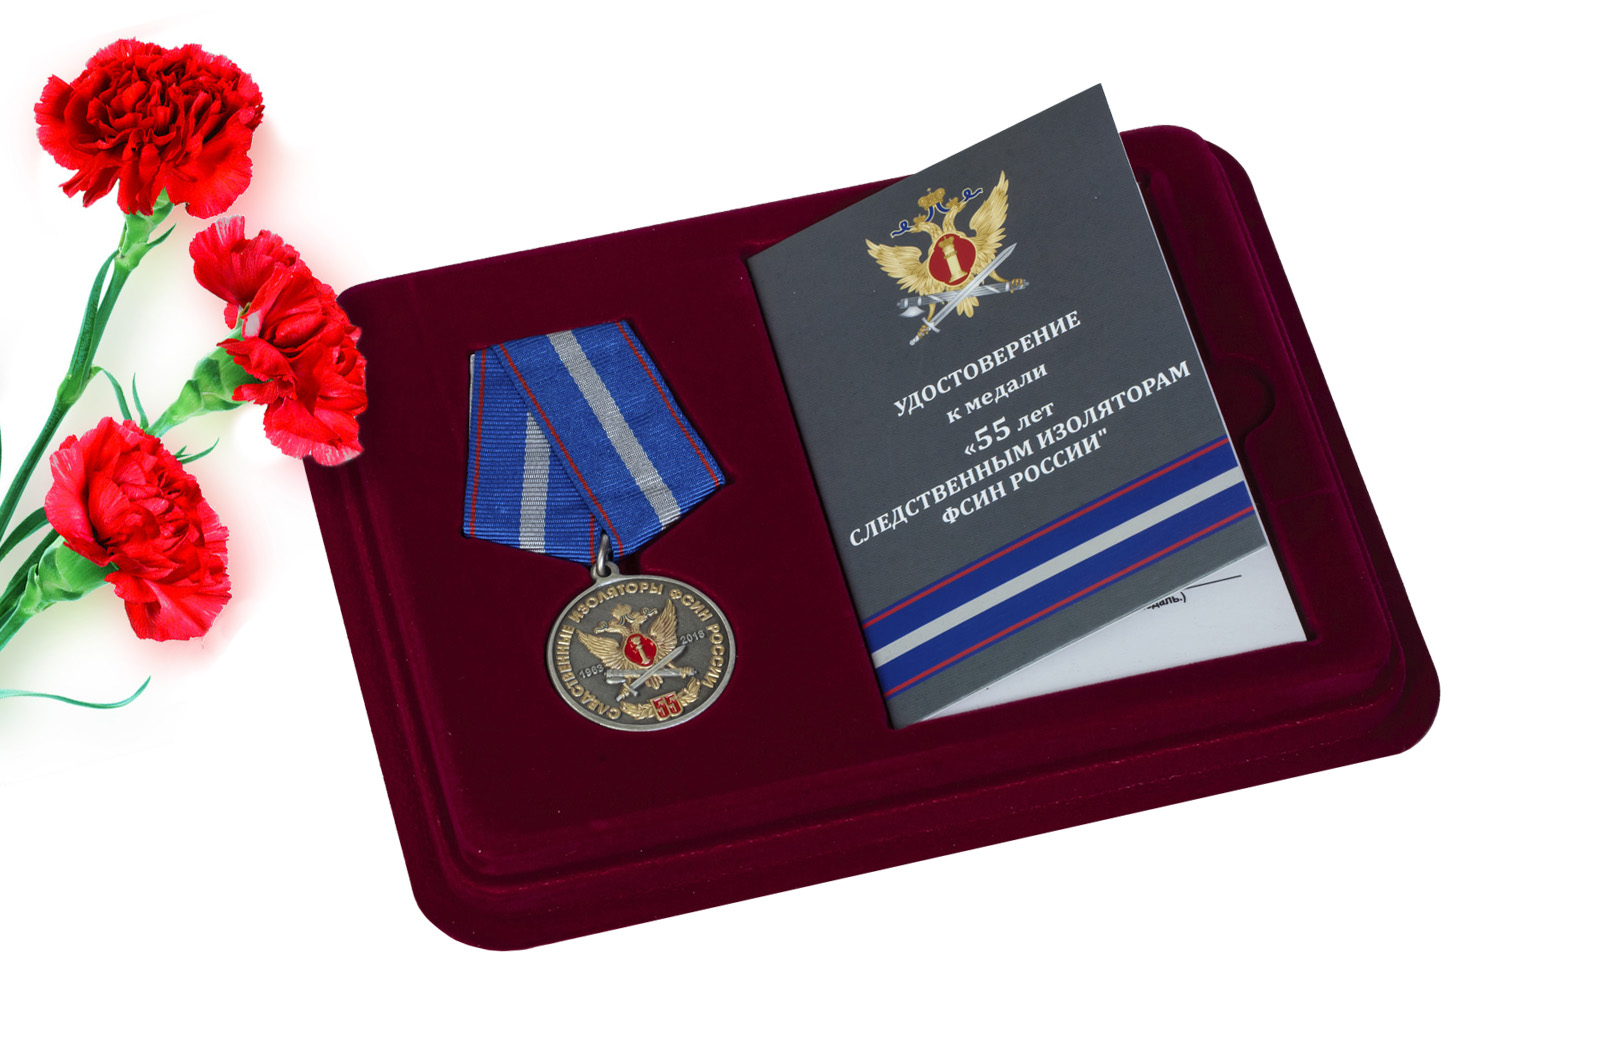 Купить памятную медаль 55 лет Следственным изоляторам ФСИН России онлайн в подарок